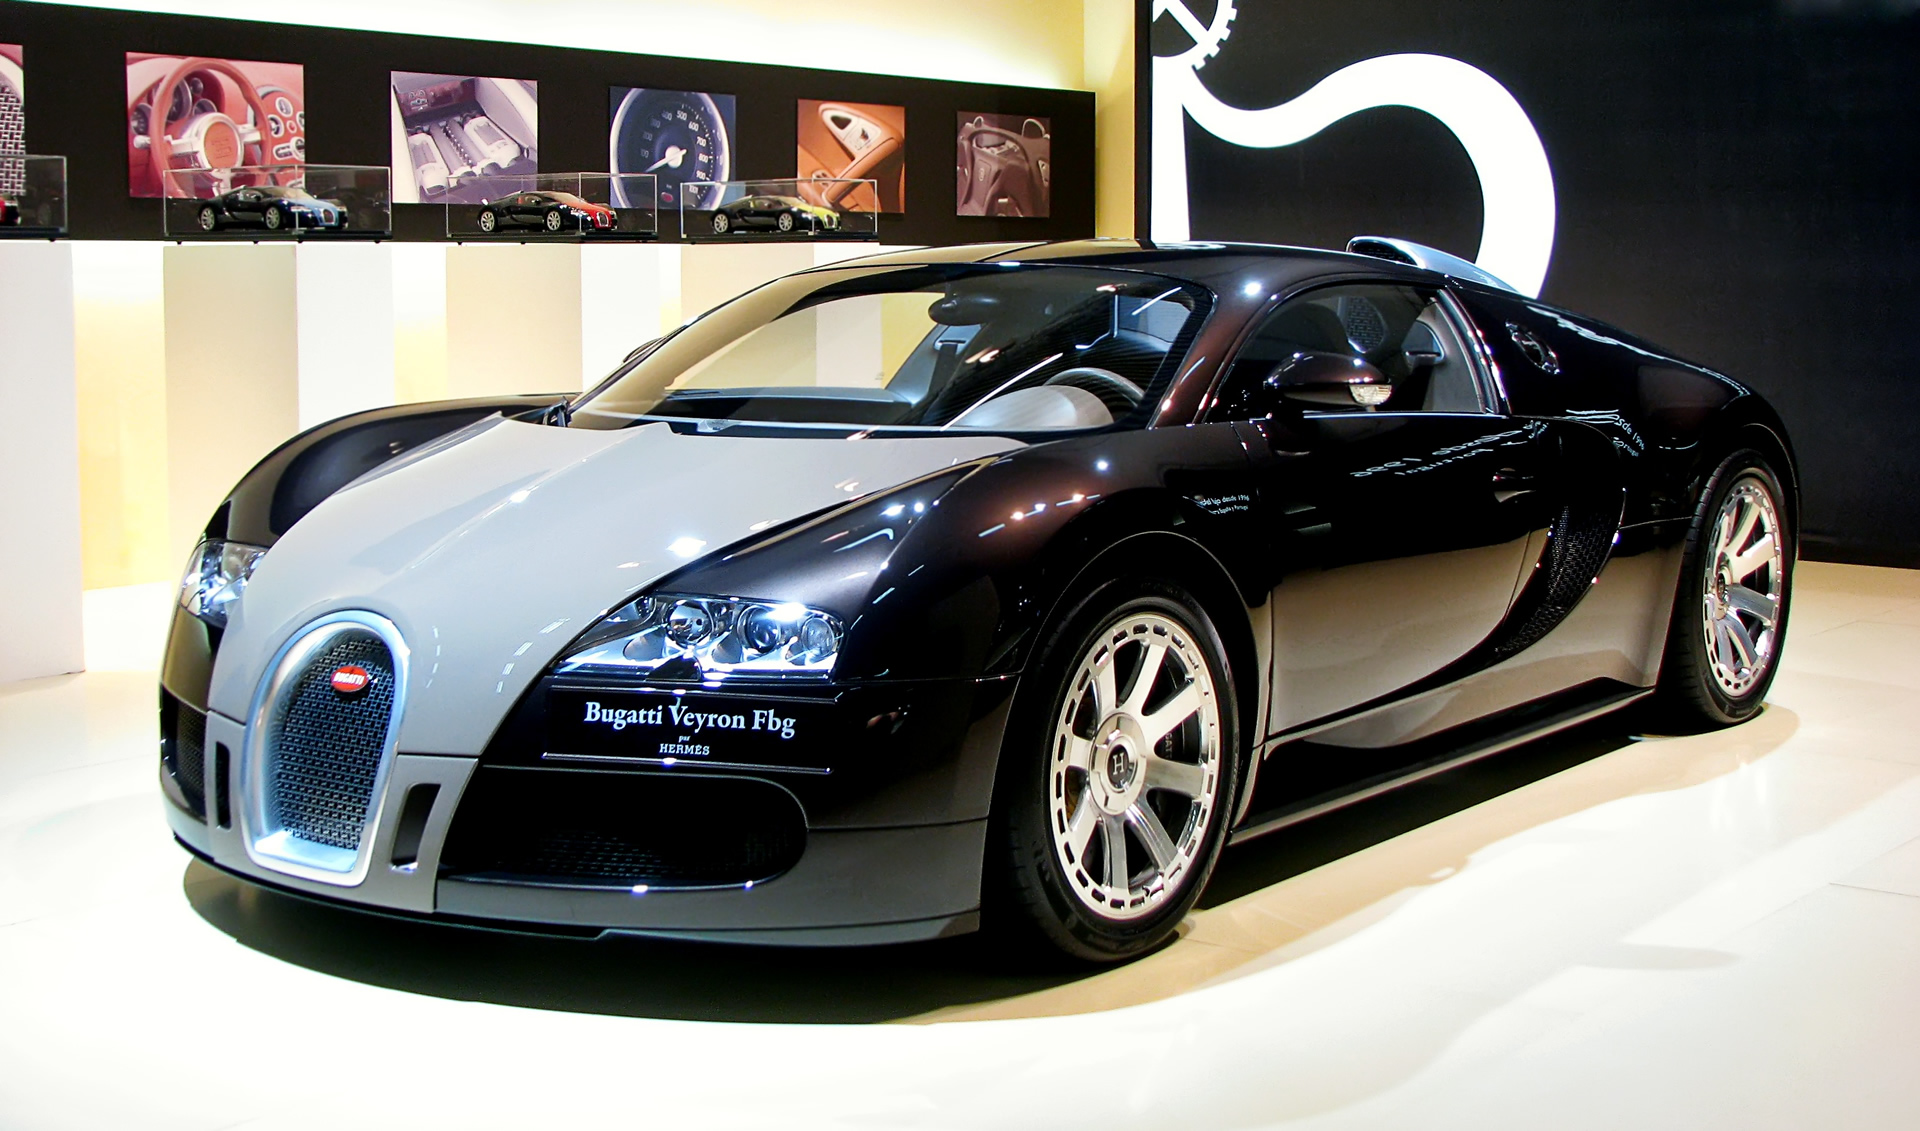 Bugatti Veyron - BCN motorshow 2009